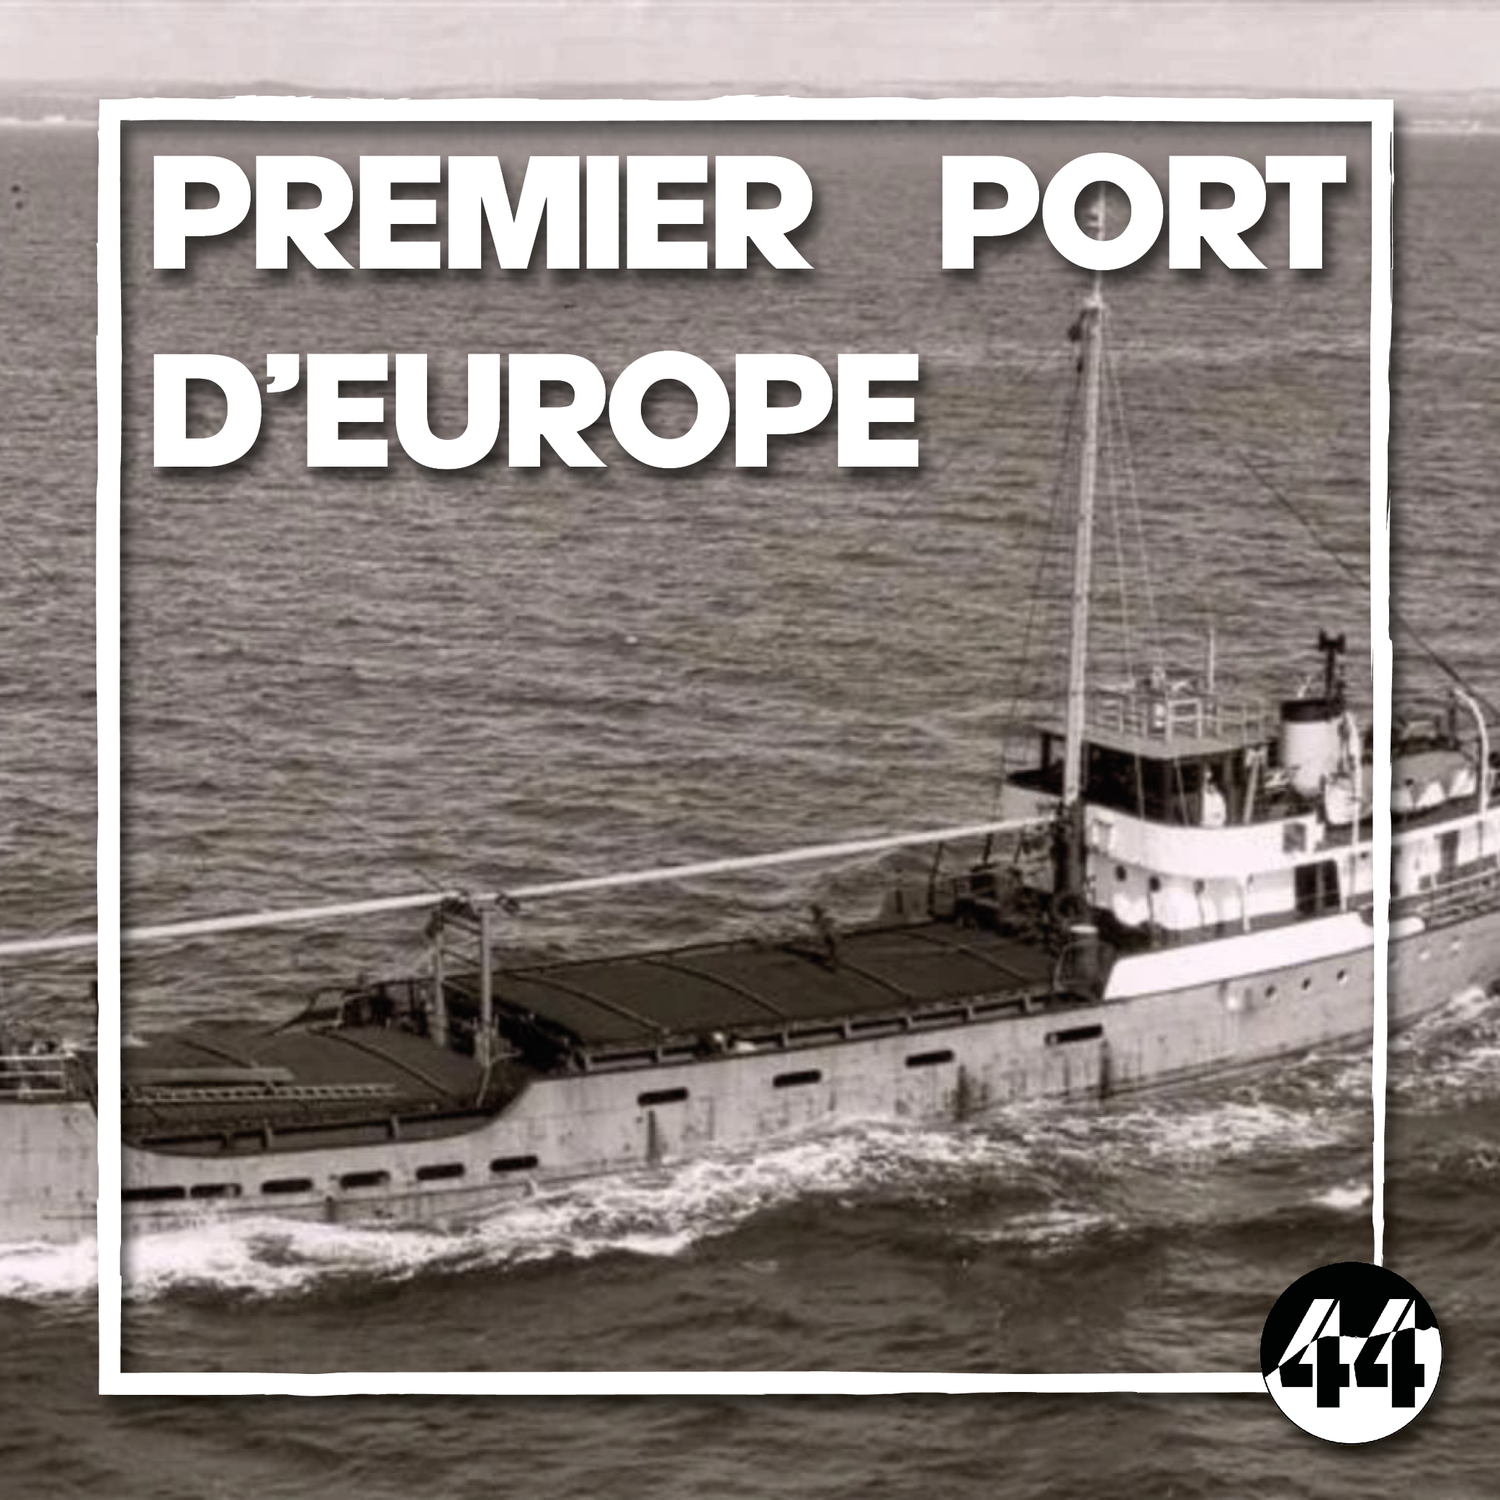 Premier port d'Europe